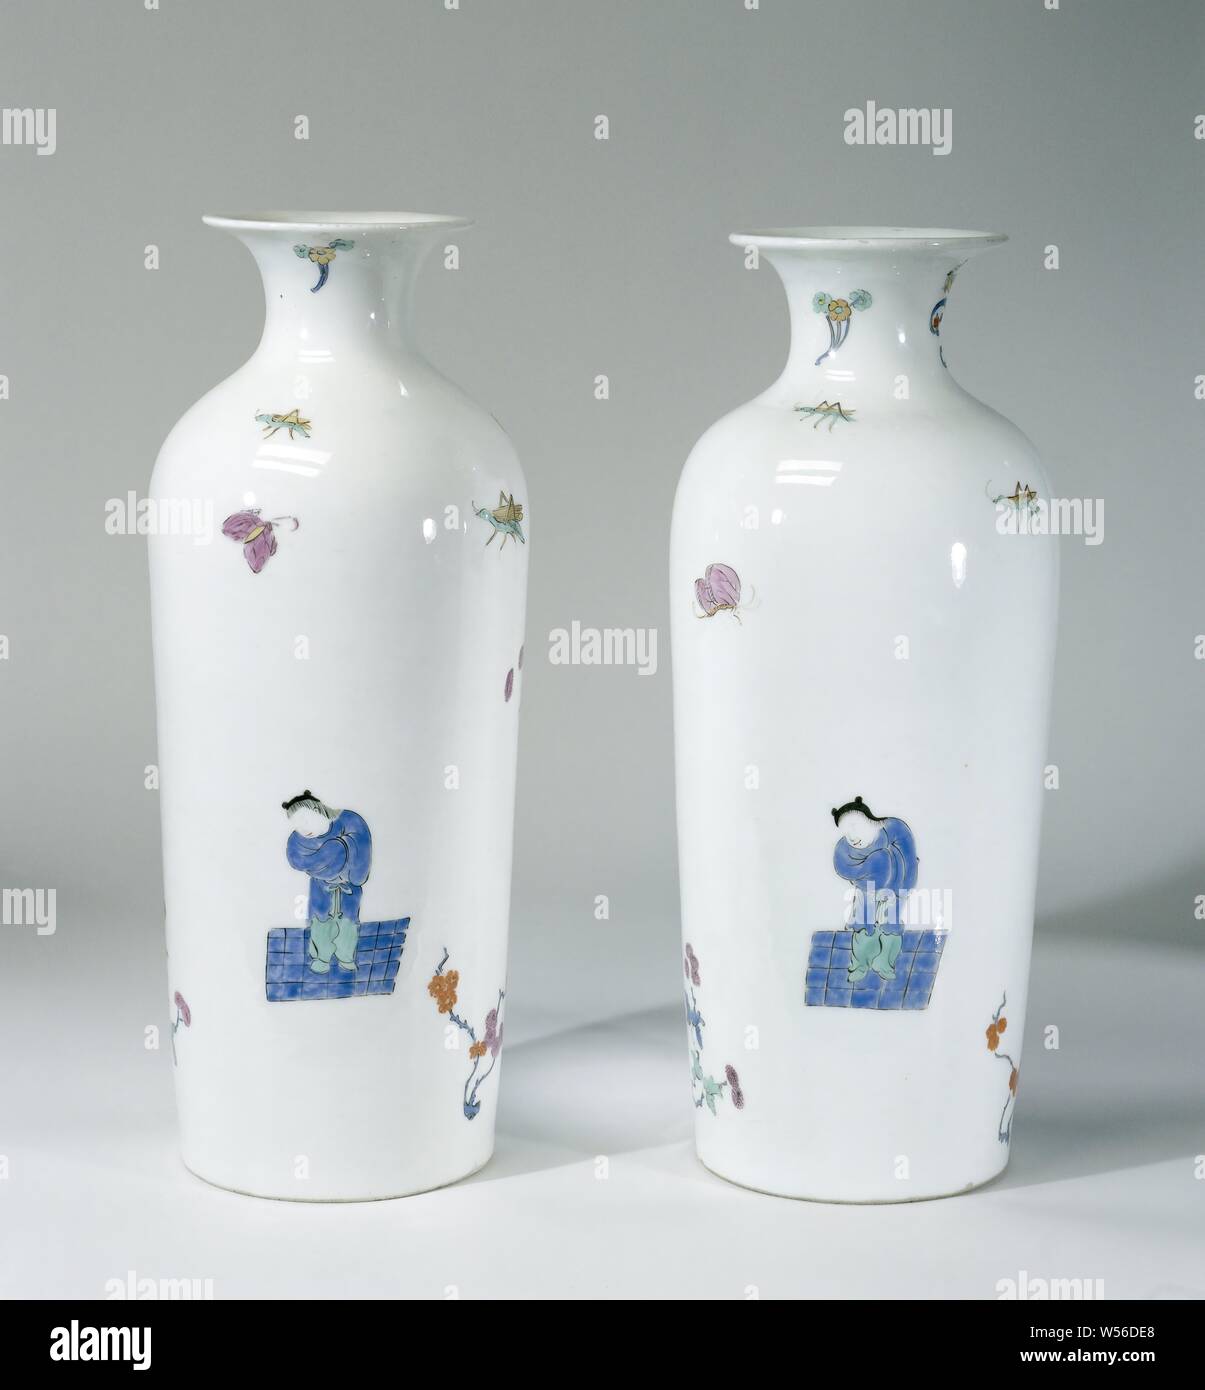 Vaso, multi-verniciato colorato con un decor Kakiemon, vaso cilindrico realizzato in porcellana dipinta. Il vaso è decorato con un ragazzo in verde e blu in piedi su un blu a scacchi terreno, un bouquet di fiori in blu e viola legati insieme con un nastro blu e una verde kylin. Il fondo è non smaltate. Il vaso non è contrassegnato., Meissener Porzellan Manufaktur, Meissen, c. 1725 - c. 1730, porcellana (materiale), h 29.2 cm × d 11,6 cm Foto Stock